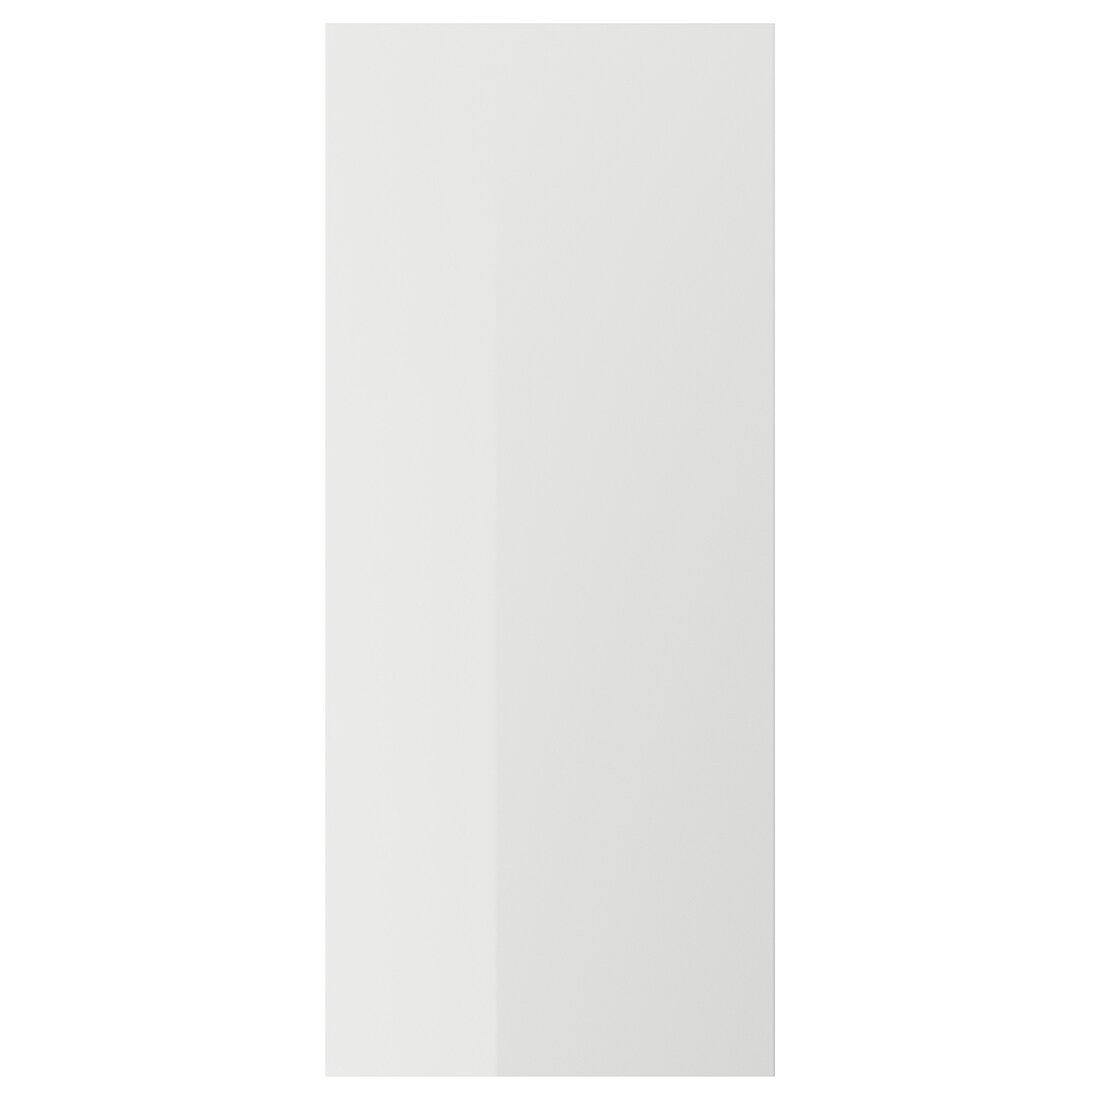 RINGHULT РИНГУЛЬТ Дверь, глянцевый светло-серый, 60x140 см